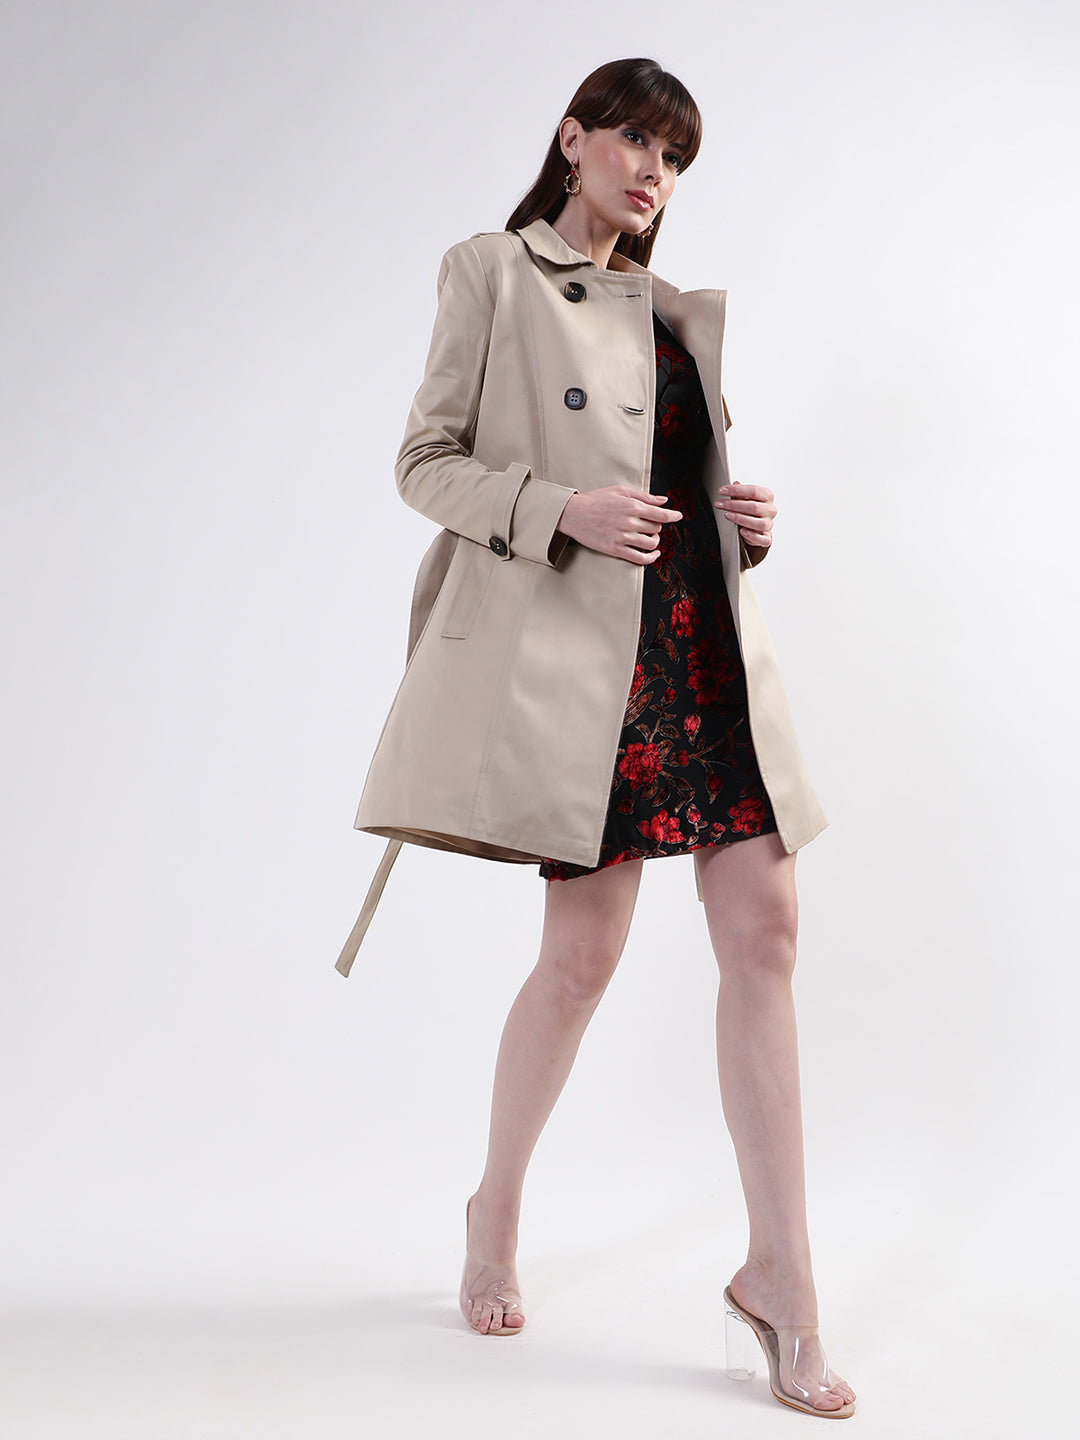 Centre Stage Women Beige Solid Collar Overcoat